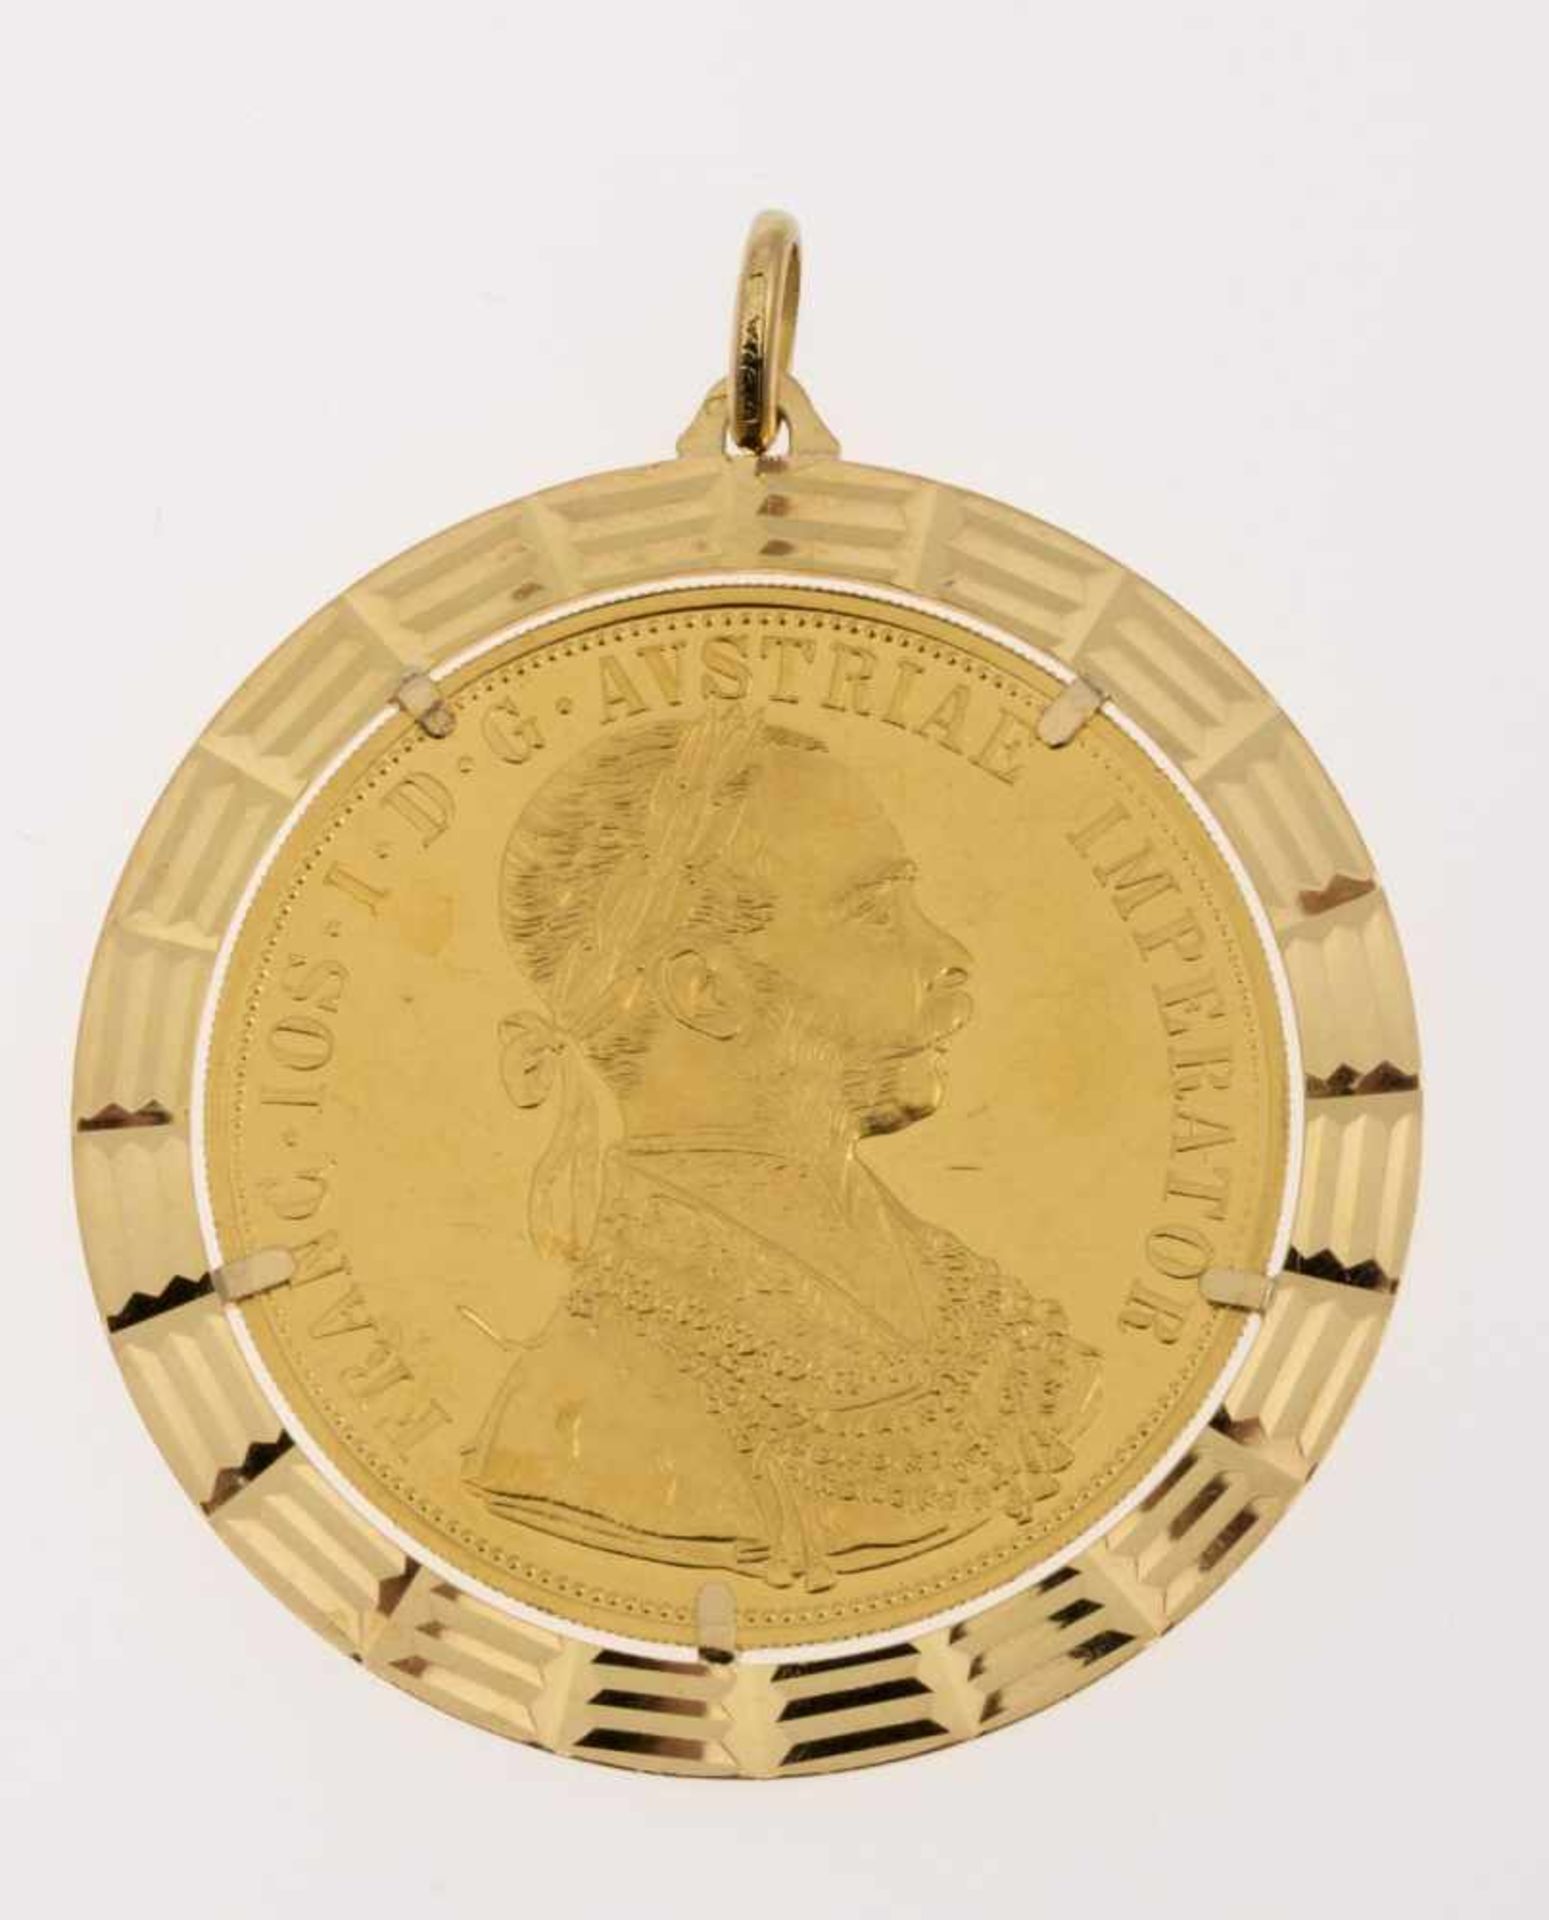 Großer MünzanhängerGelbgold 750 bzw. 986. Münze Österreich-Ungarn 4 Dukaten 1915 Franz Josef I. D.